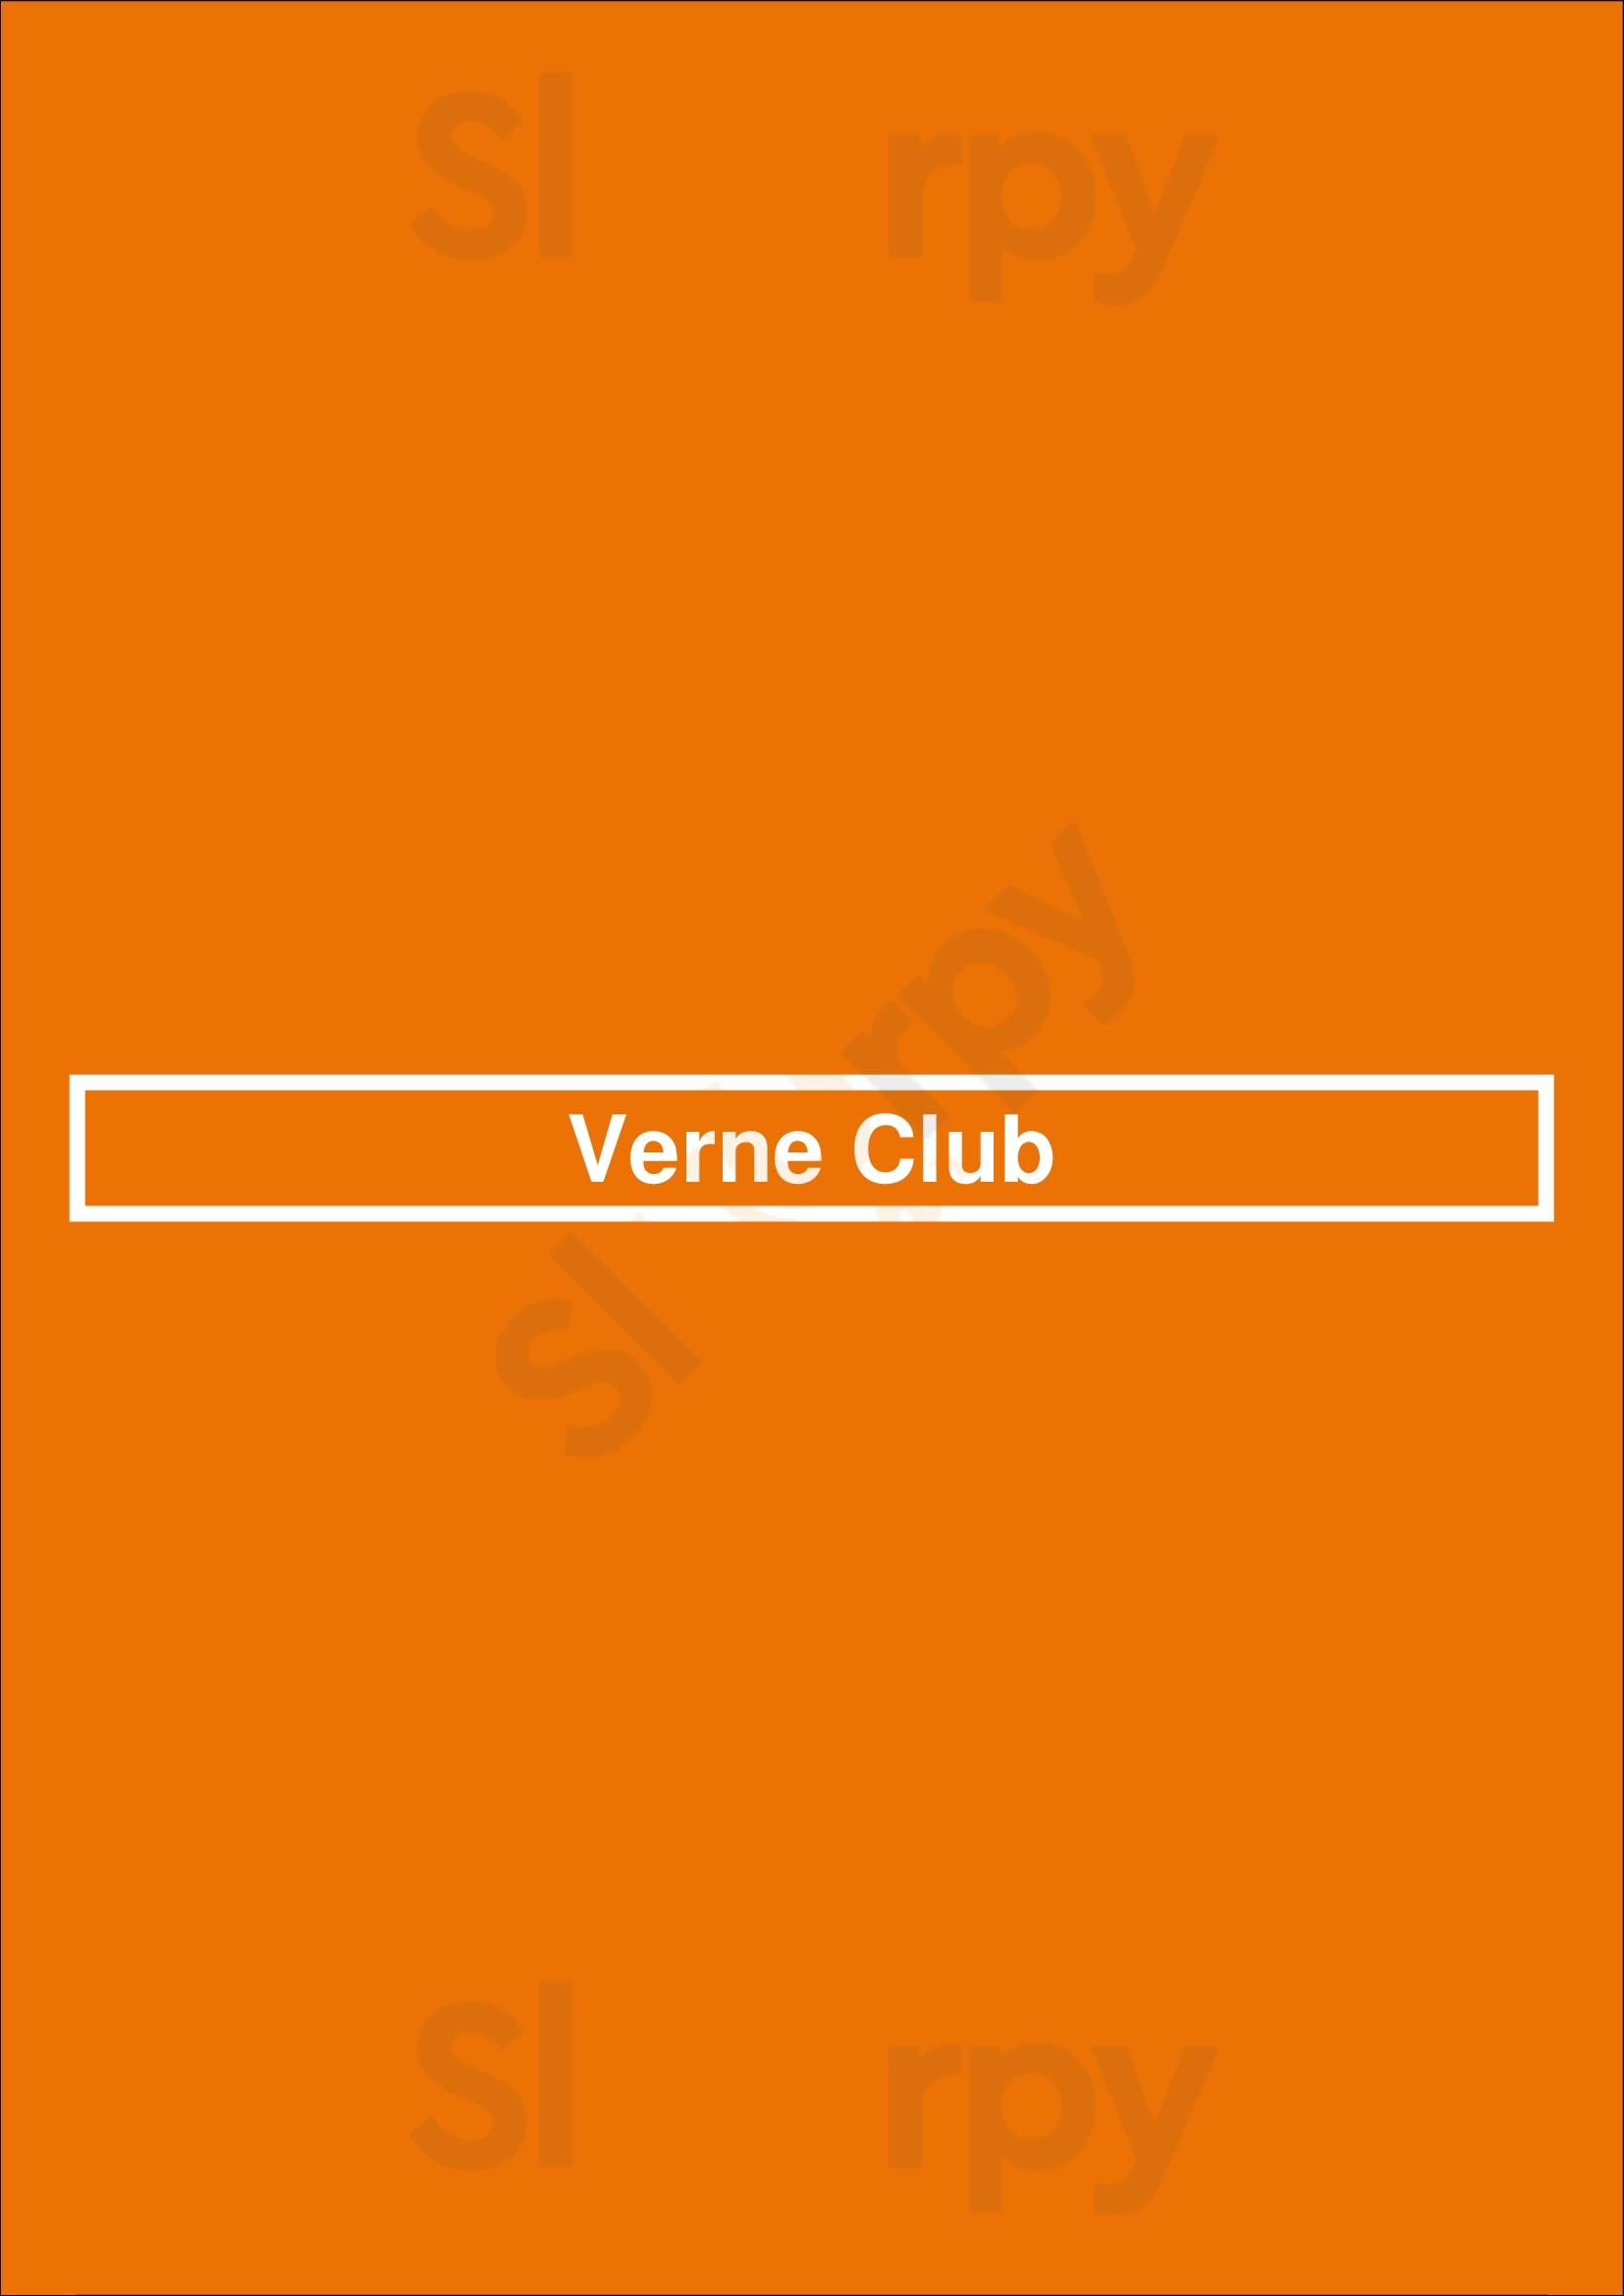 Verne Club Buenos Aires Menu - 1